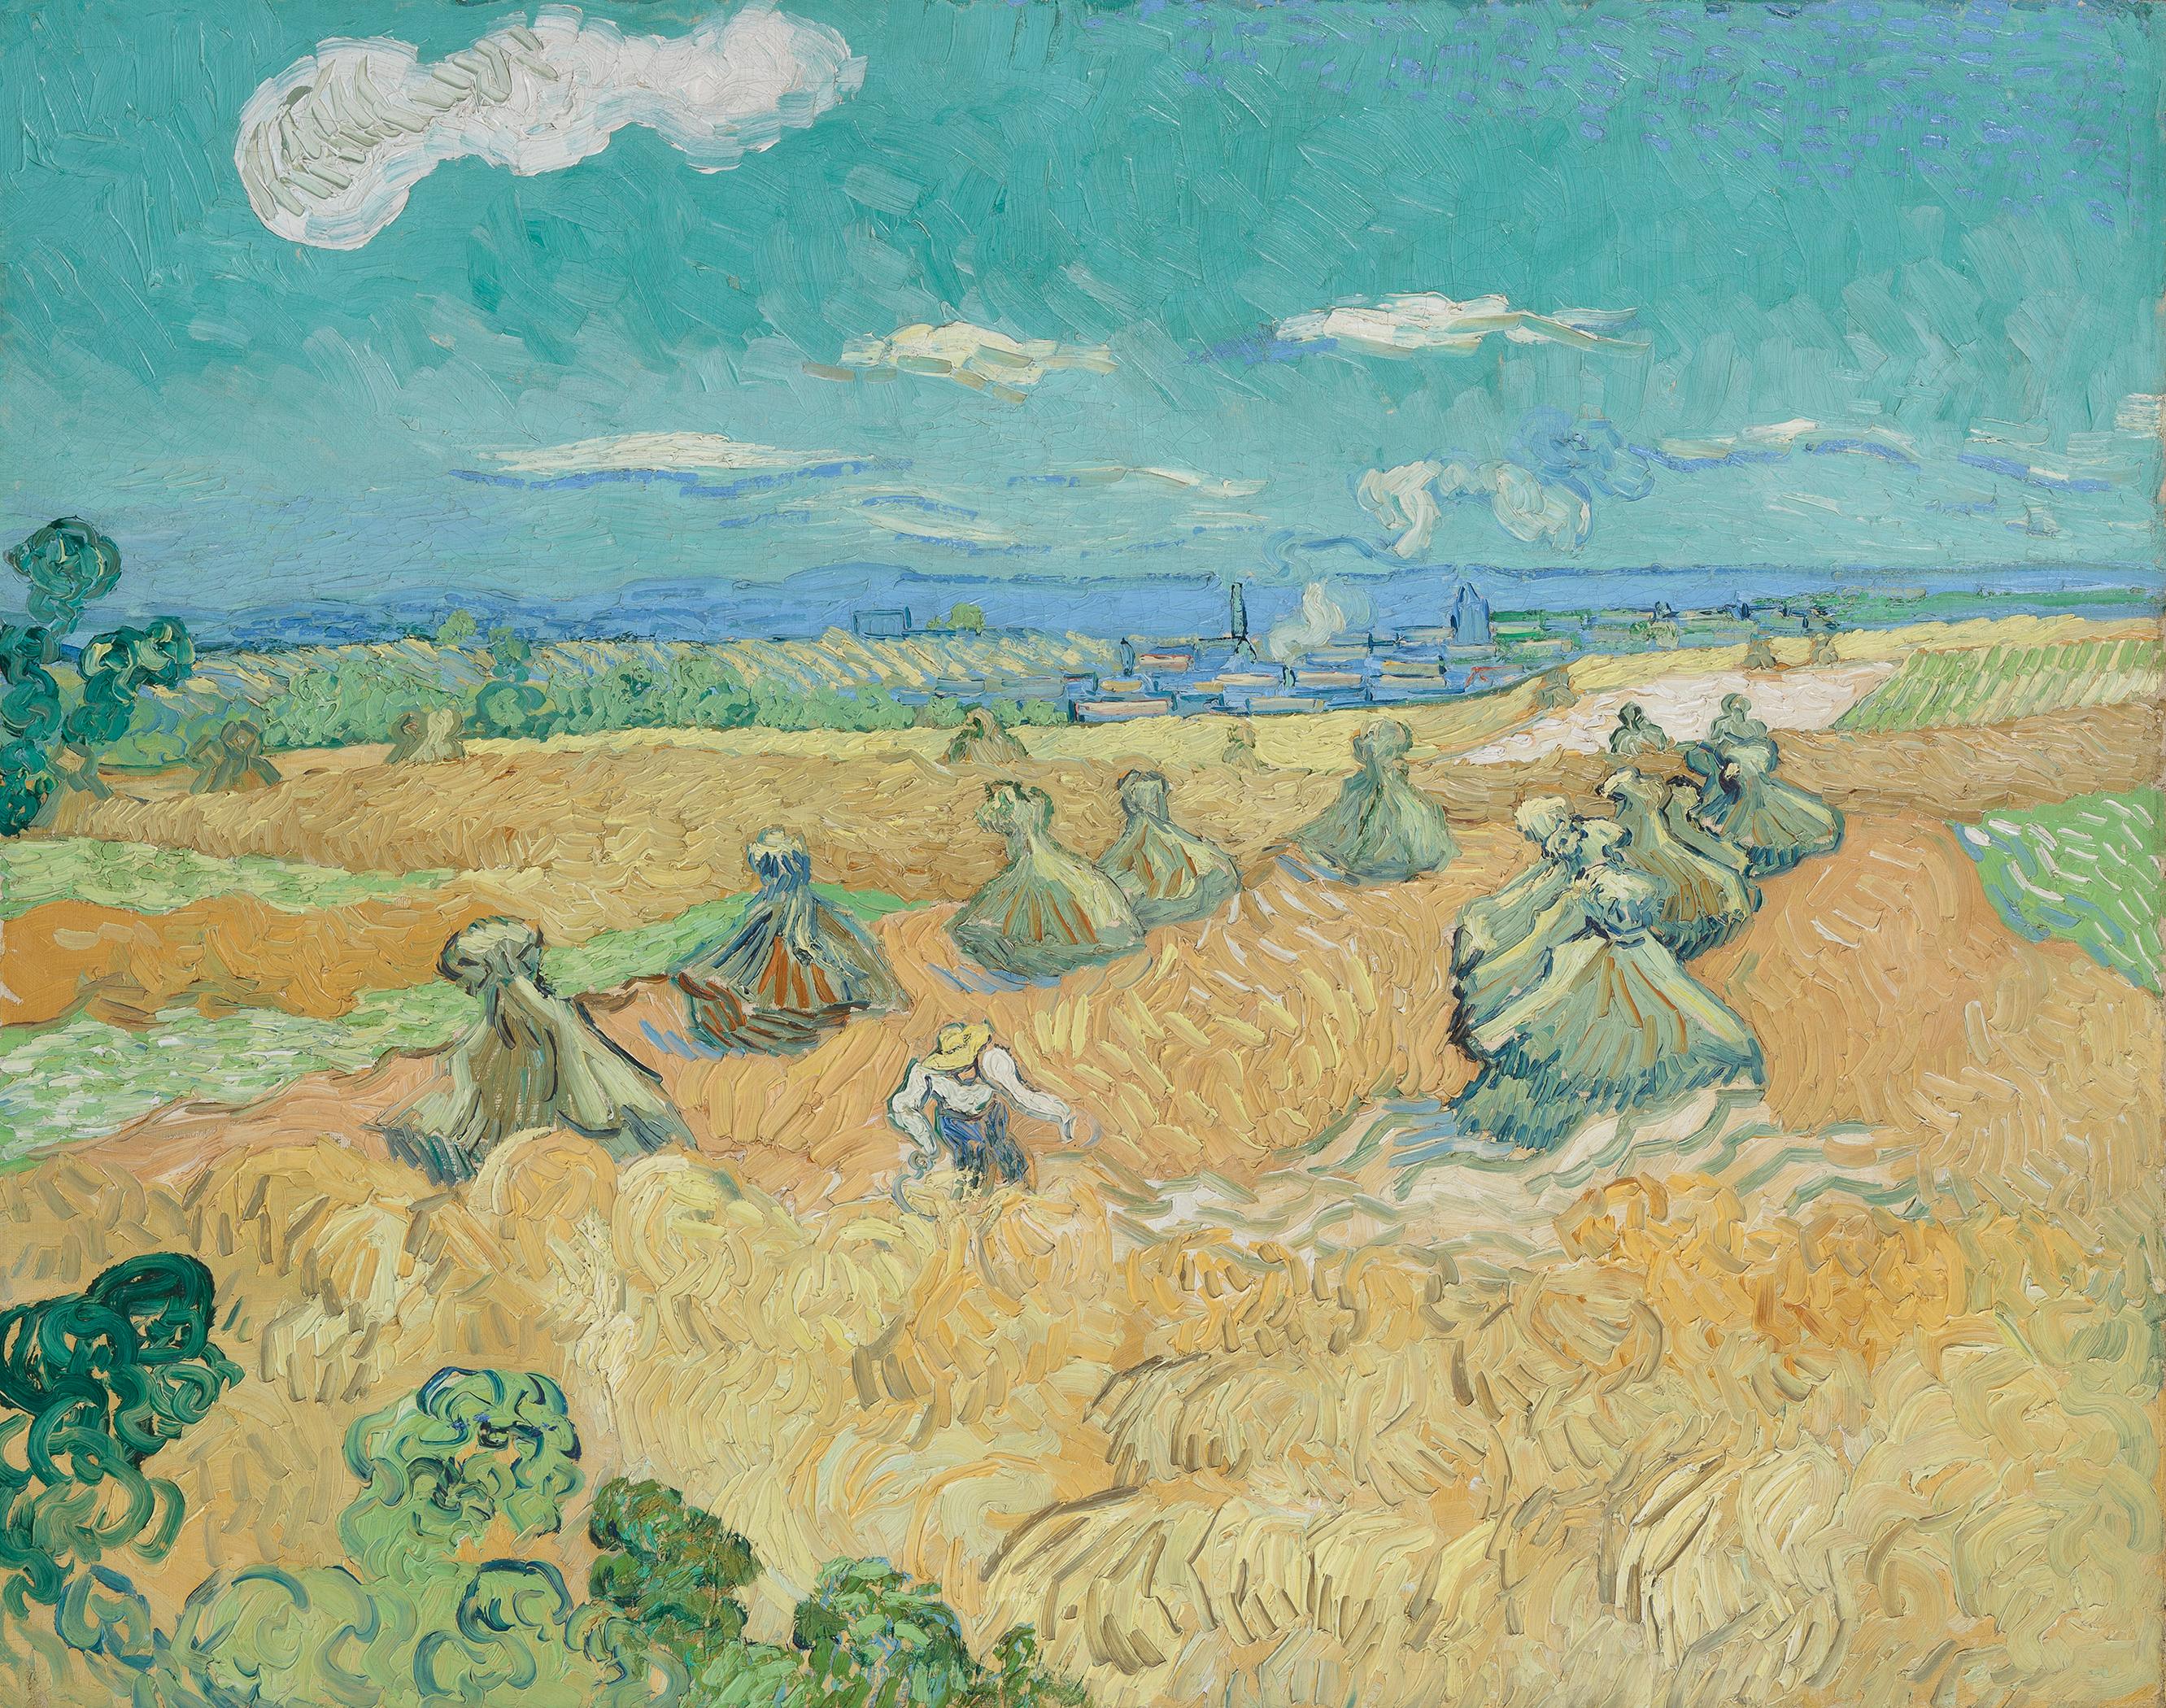 Пшенична поља са жетеоцем, Овер by Vincent van Gogh - 1890. - 73,6 x 93 cm 